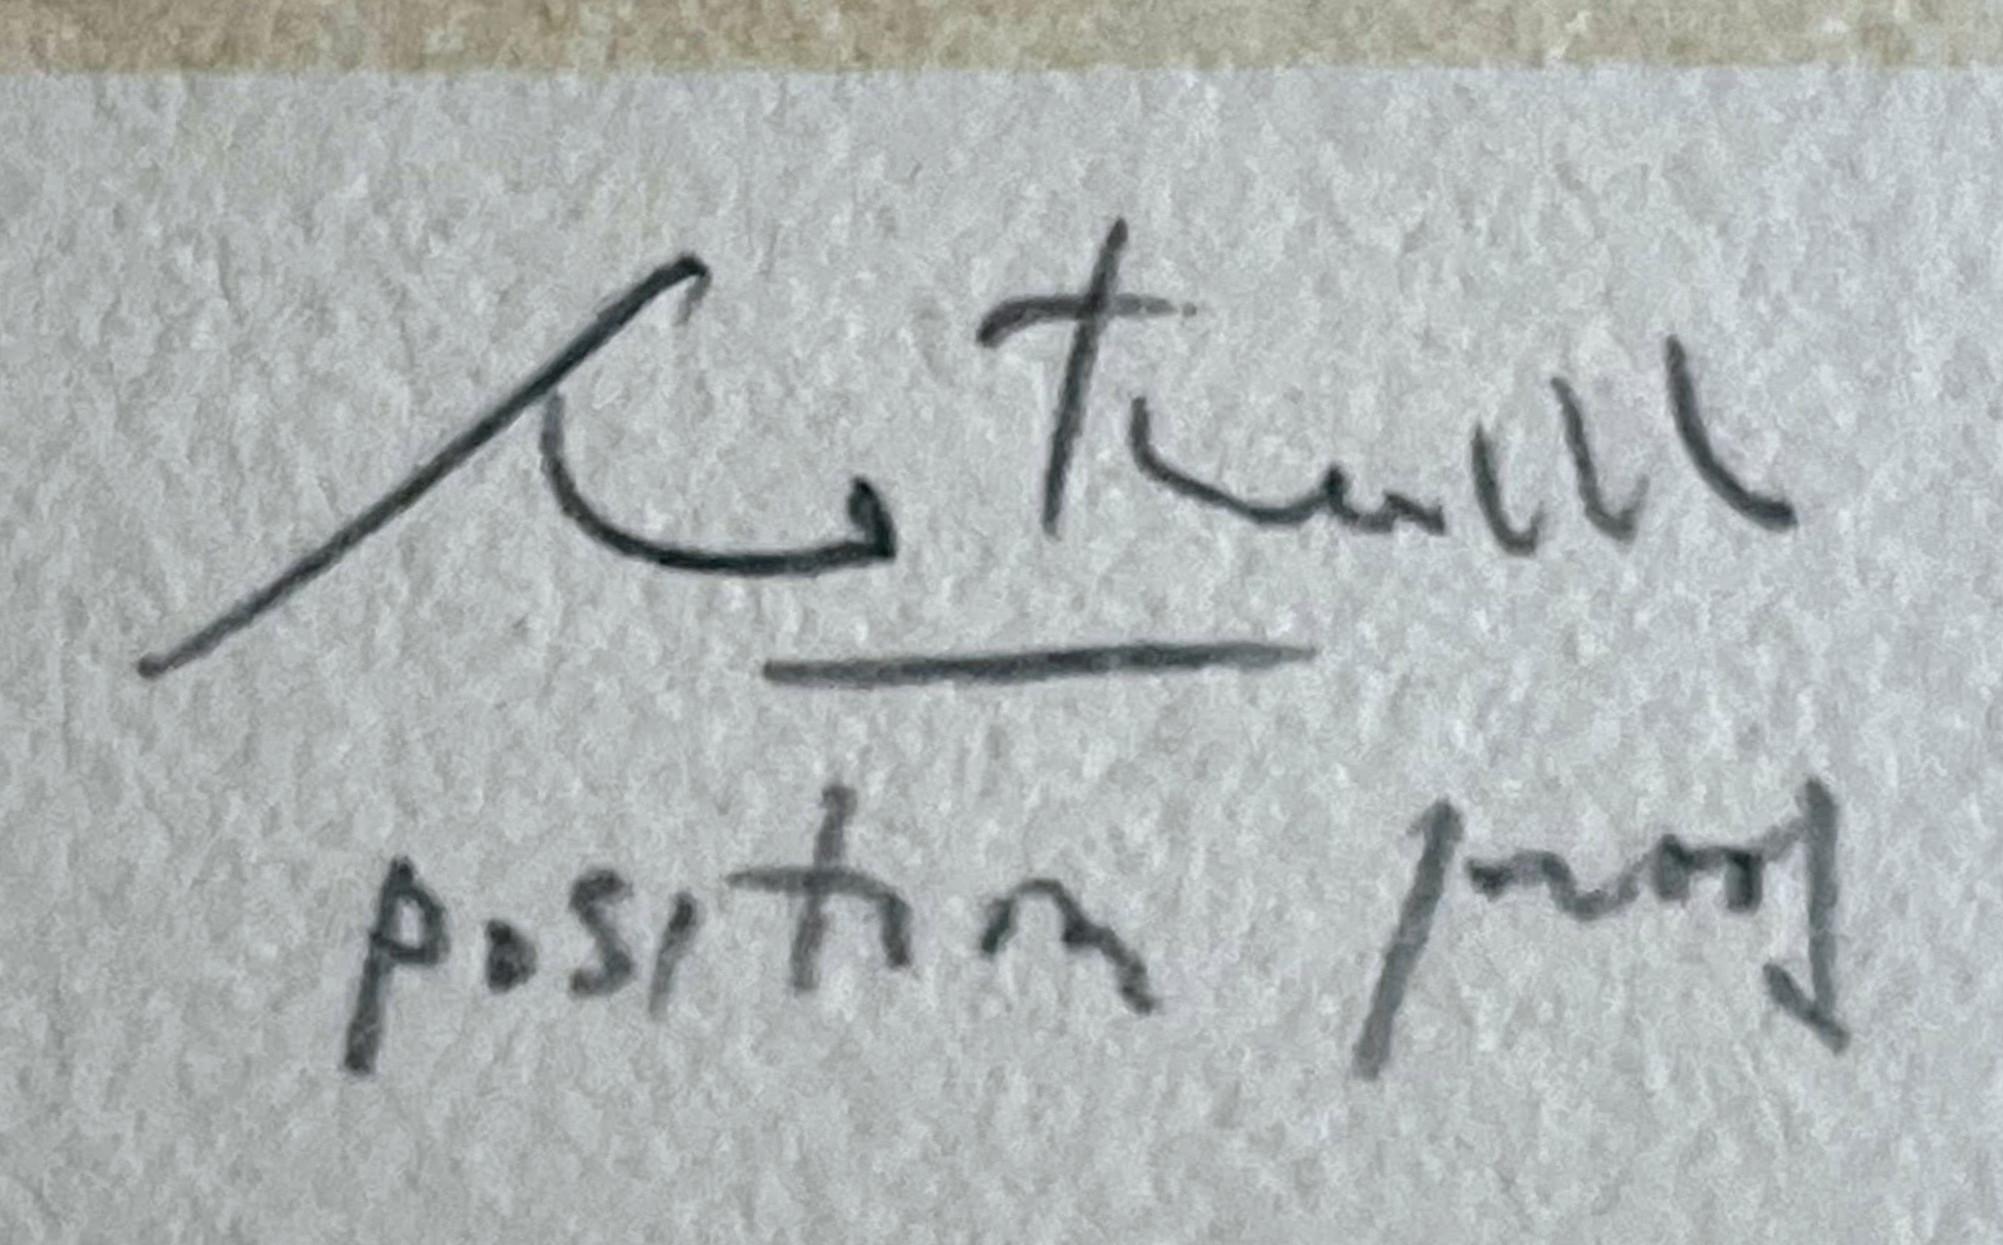 Robert Motherwell
Rückkehr, aus der Suite von Octavio Paz, 1988
Lithographie und Chine-Applikation auf handgeschöpftem japanischem Gampi-Papier mit Wasserzeichen, aufgetragen auf Arches-Papier
Vom Künstler handsigniert, signiert und mit dem Vermerk